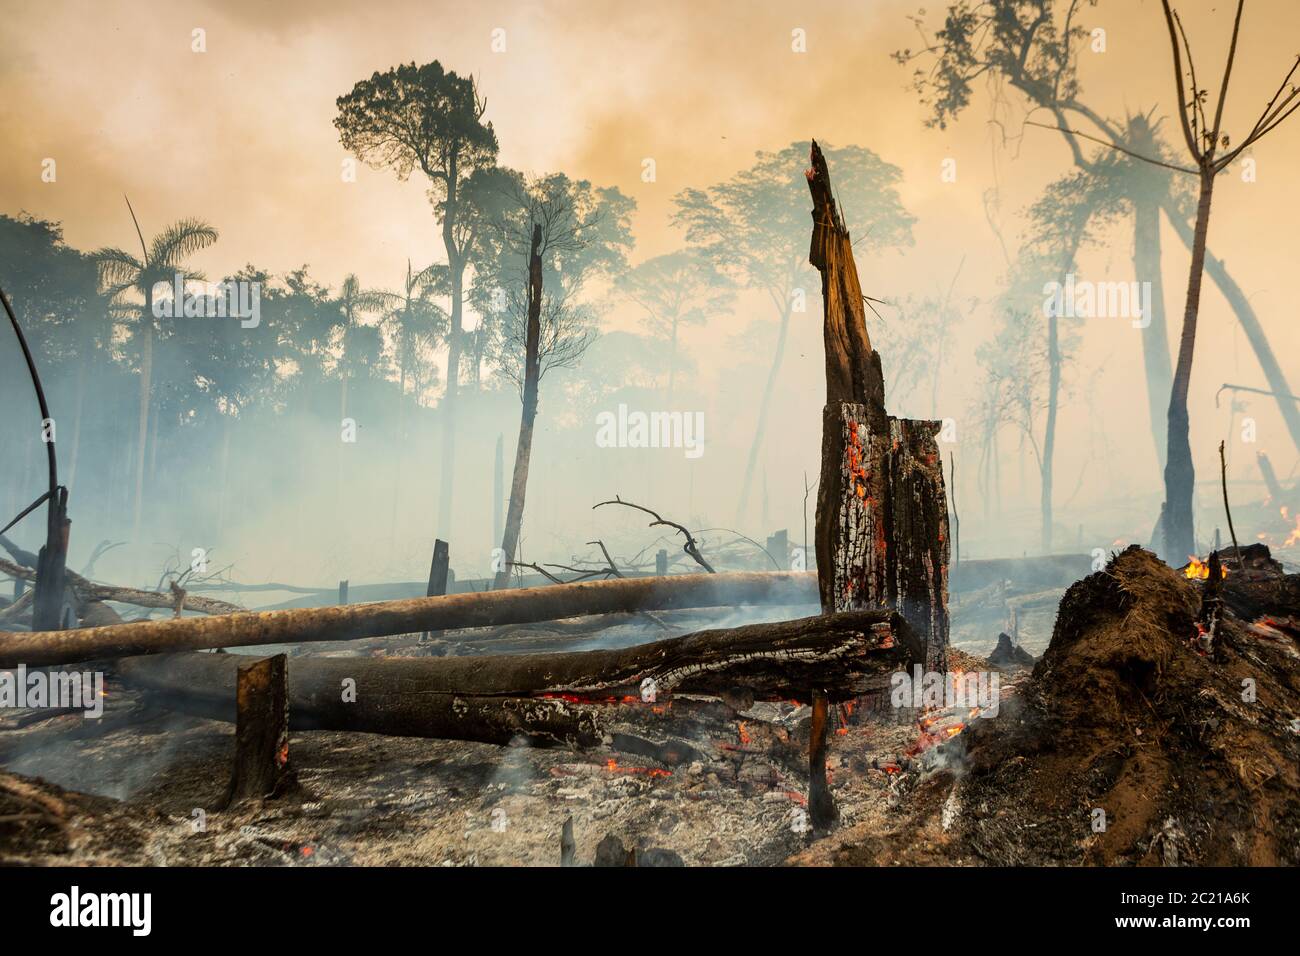 Árboles en el fuego con humo en la deforestación ilegal en la selva amazónica para abrir el área para la agricultura. Concepto de co2, medio ambiente, ecología, clima Foto de stock